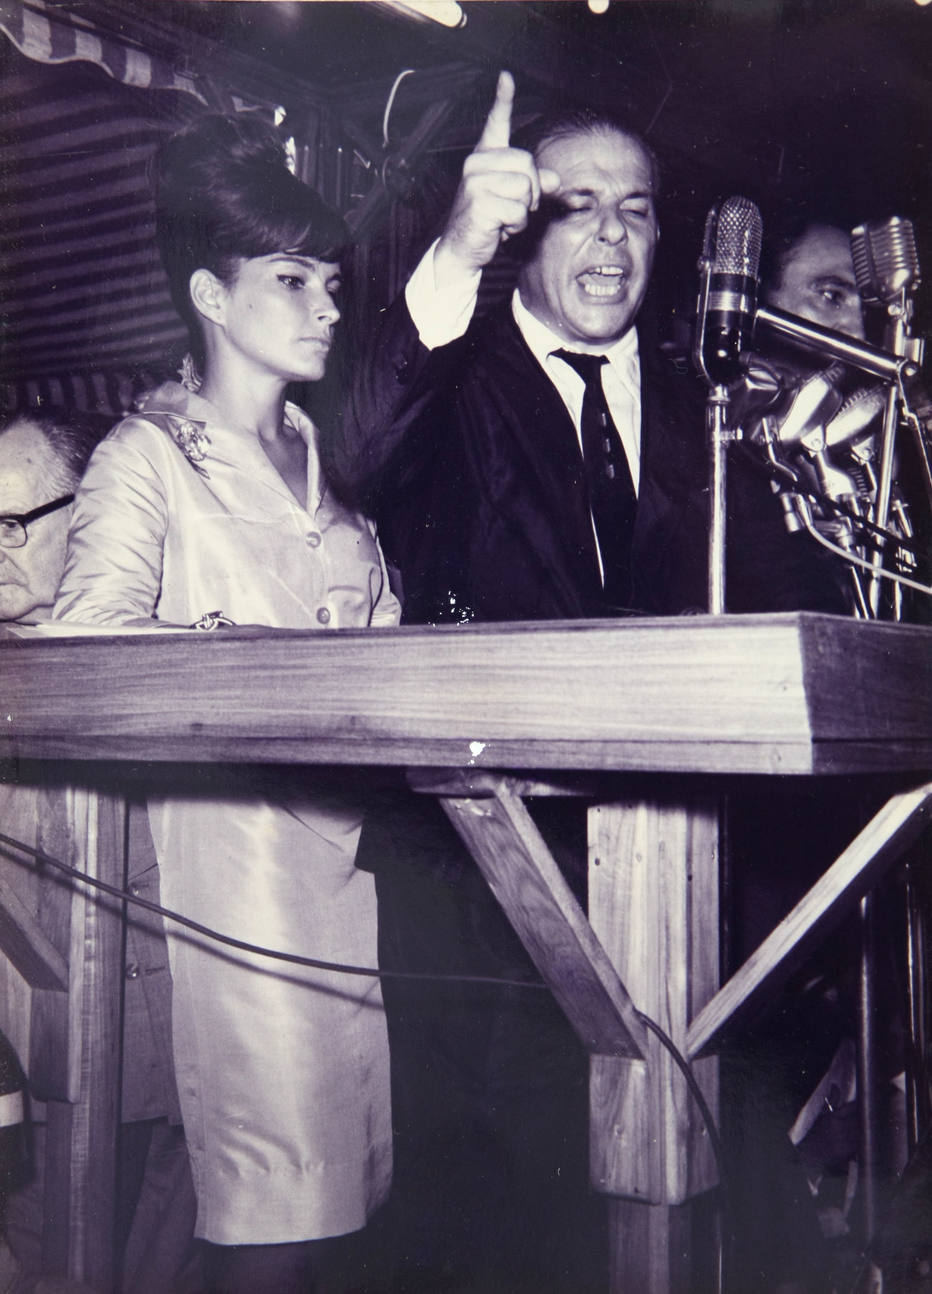 Maria Thereza e Jango no comício da Central do Brasil, em 13 de março de 64